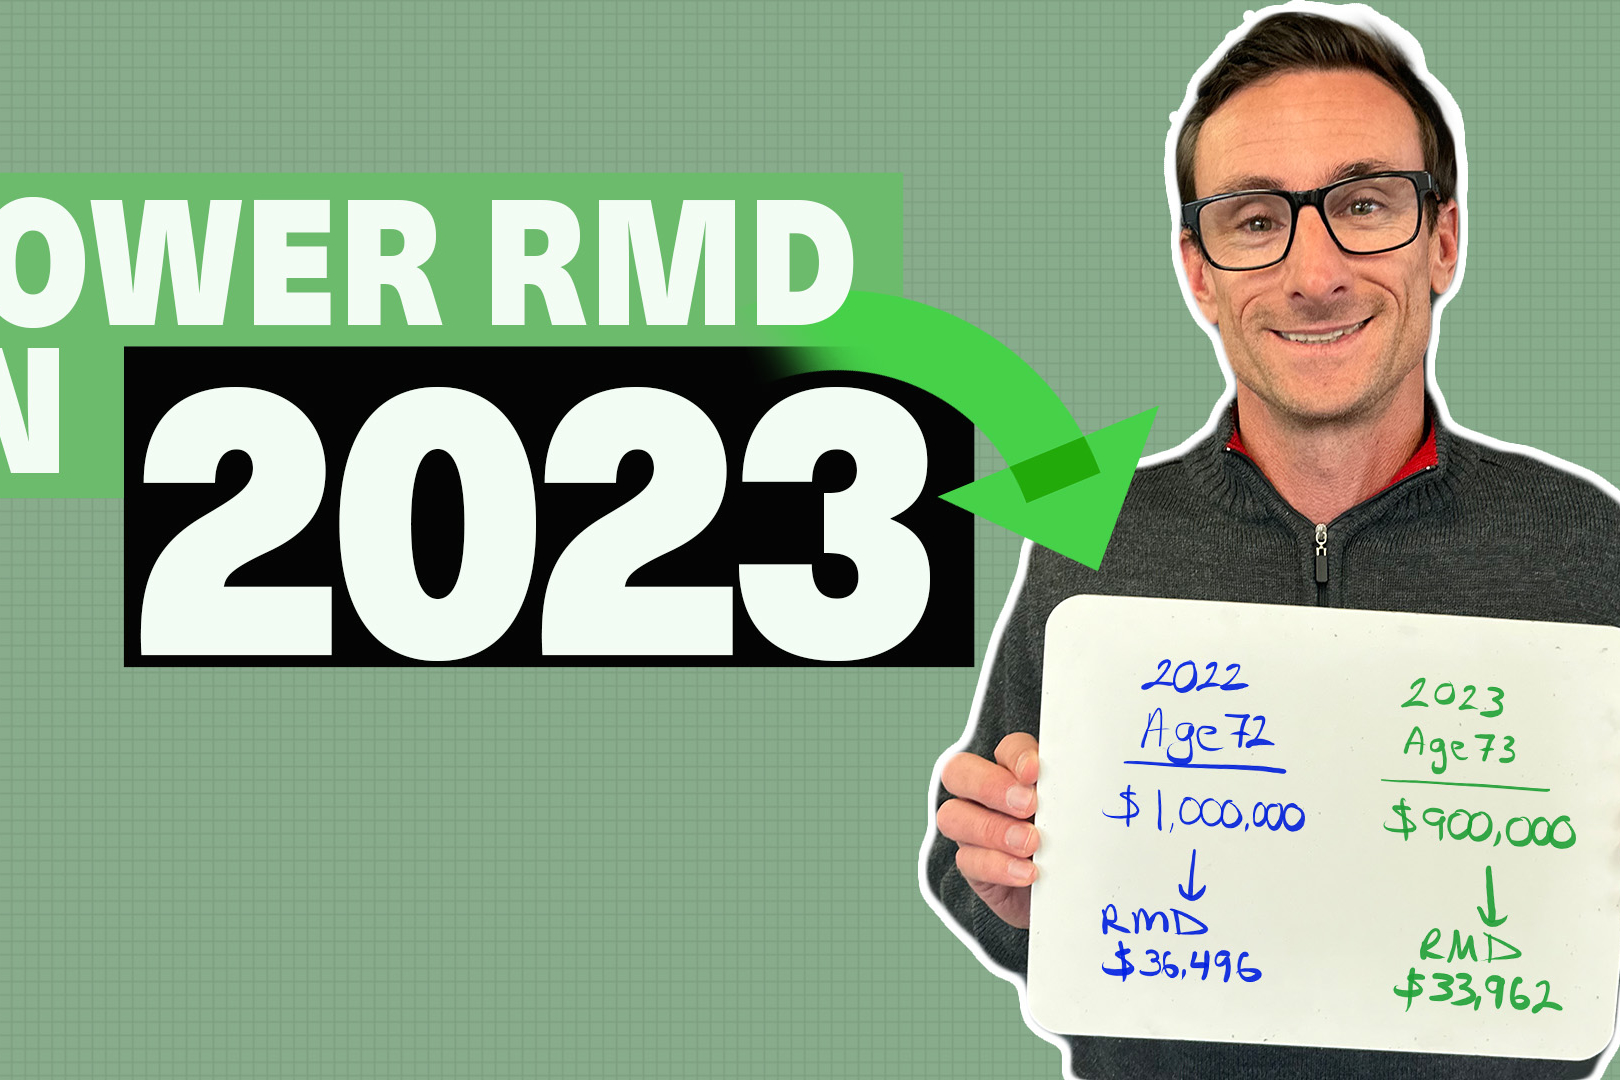 Lower RMD 2023